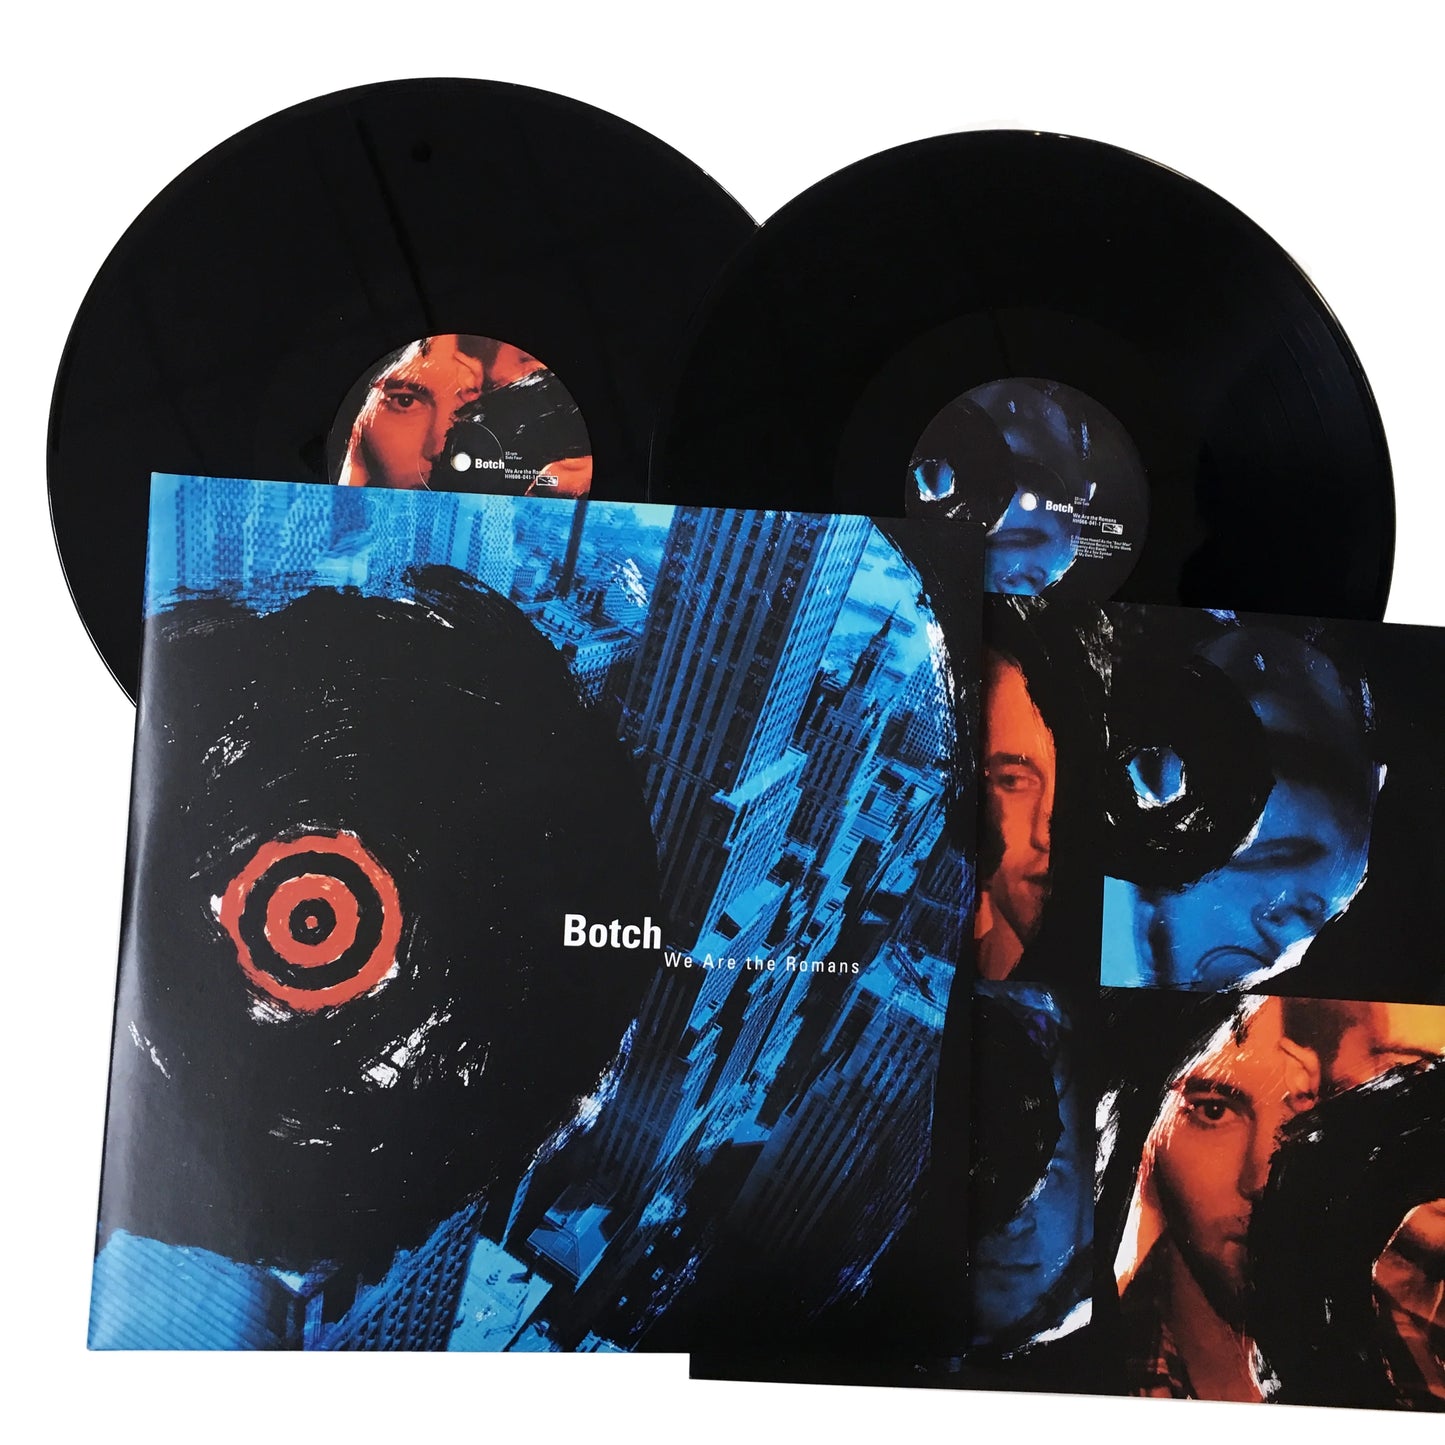 Botch - We Are The Romans "Reissue" (Double Black Vinyl)